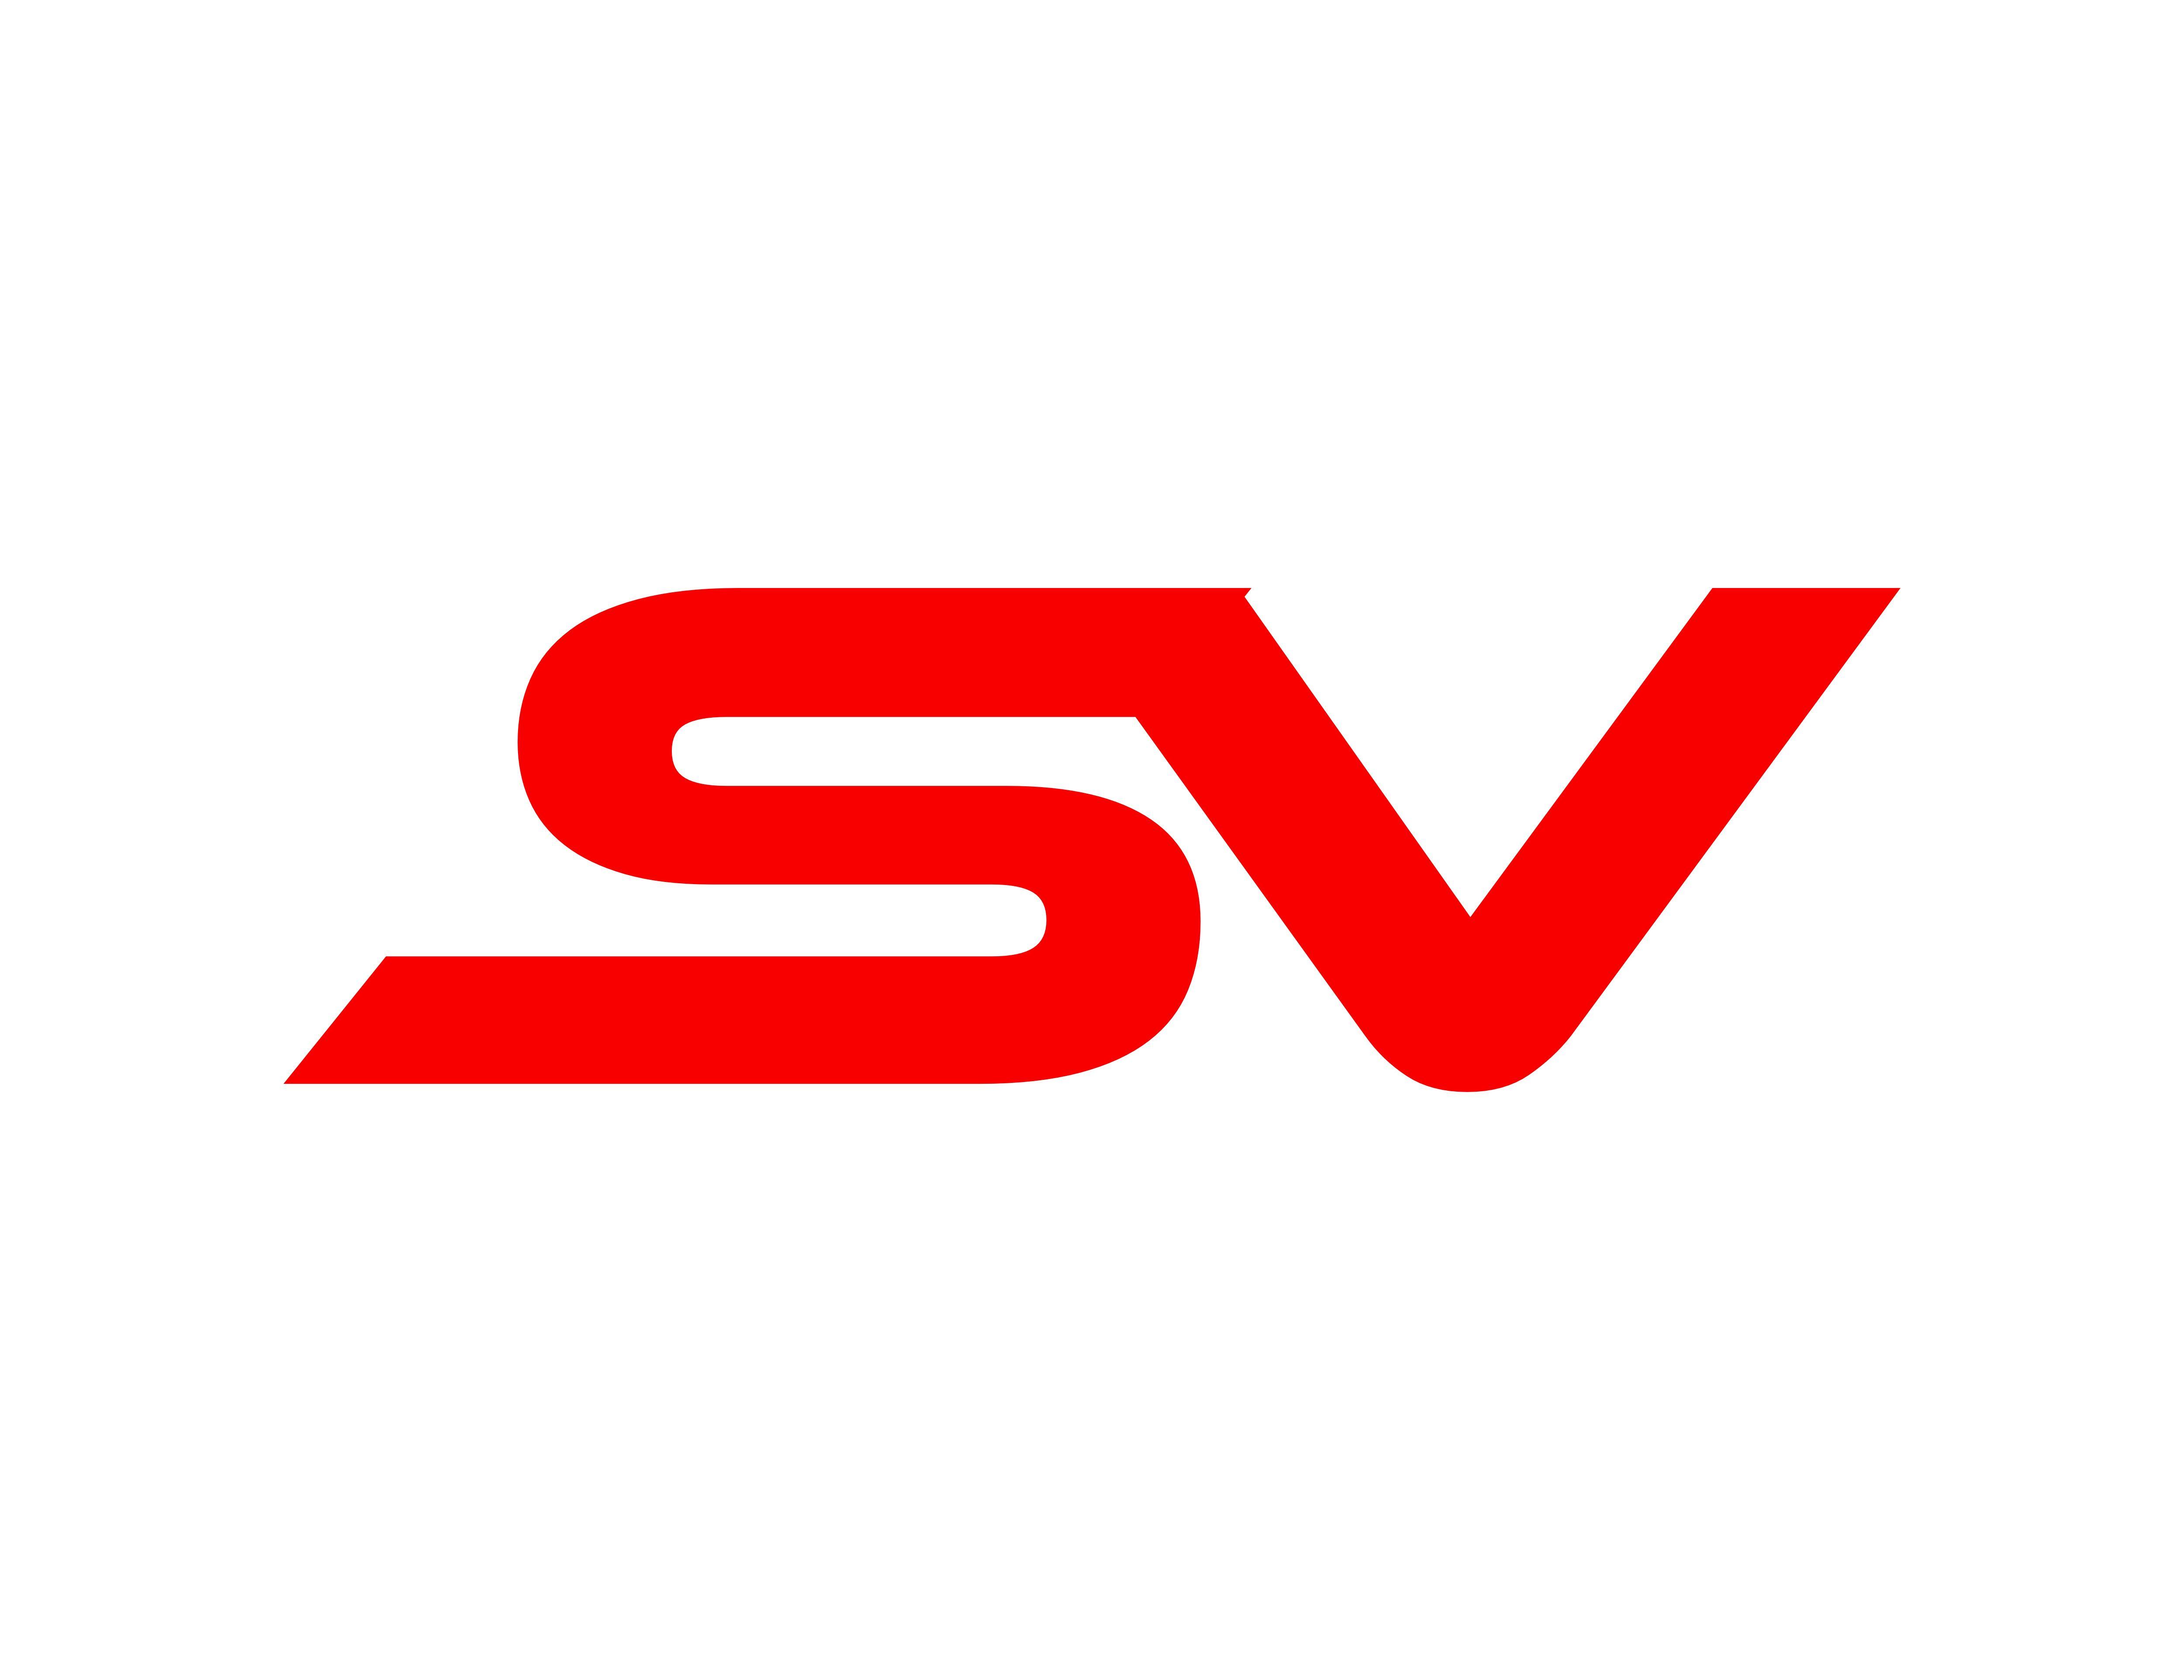 SV Logo - Sv letter logo